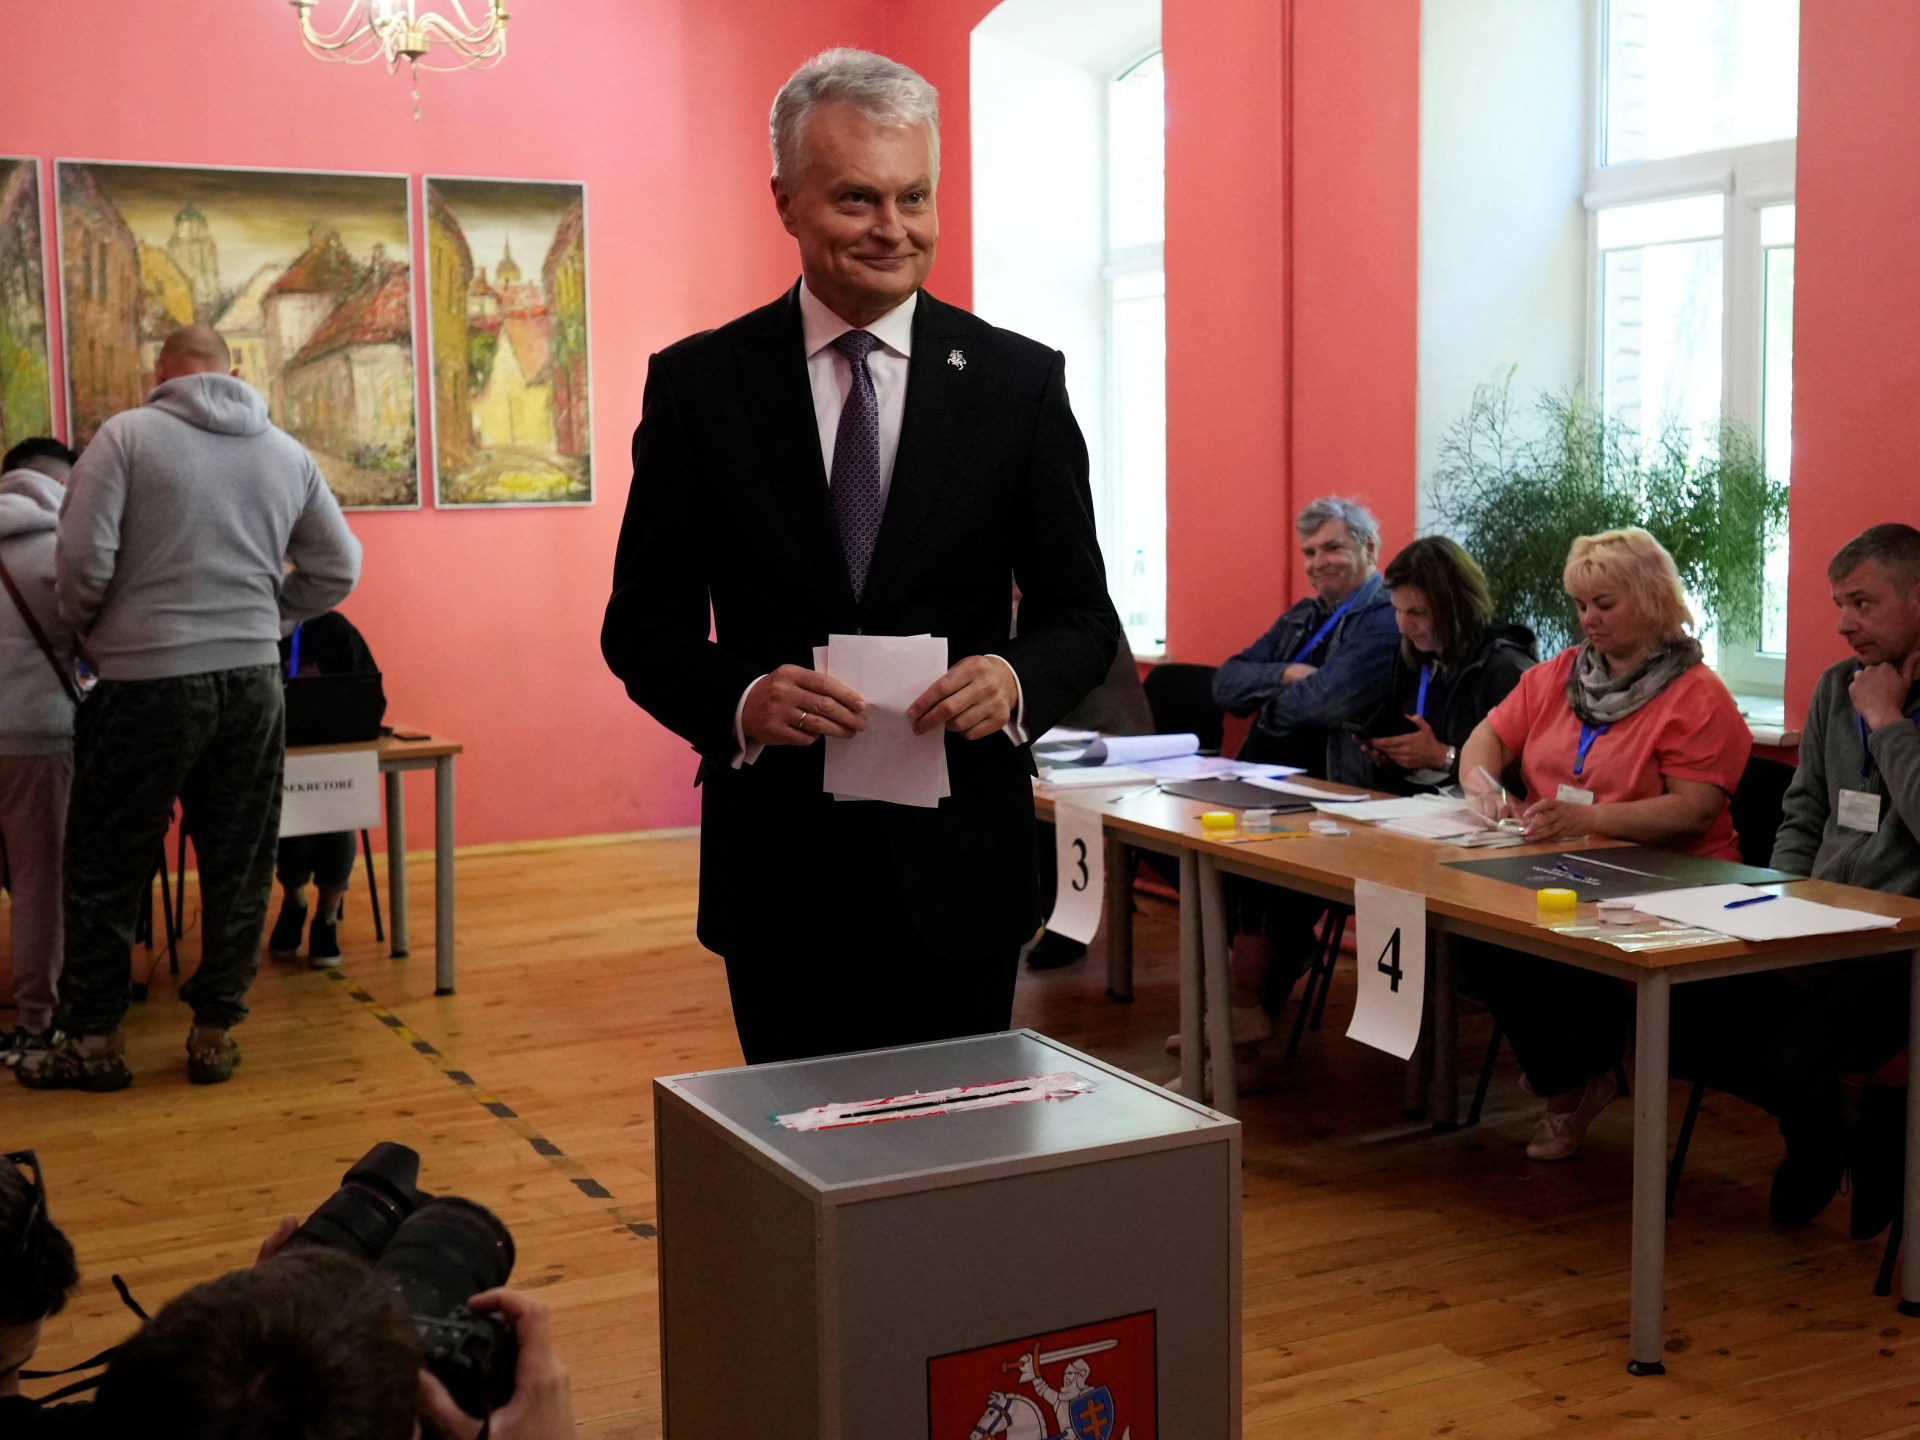 ناوسيدا في ليتوانيا تفوز بالجولة الأولى من الانتخابات الرئاسية |  أخبار الانتخابات